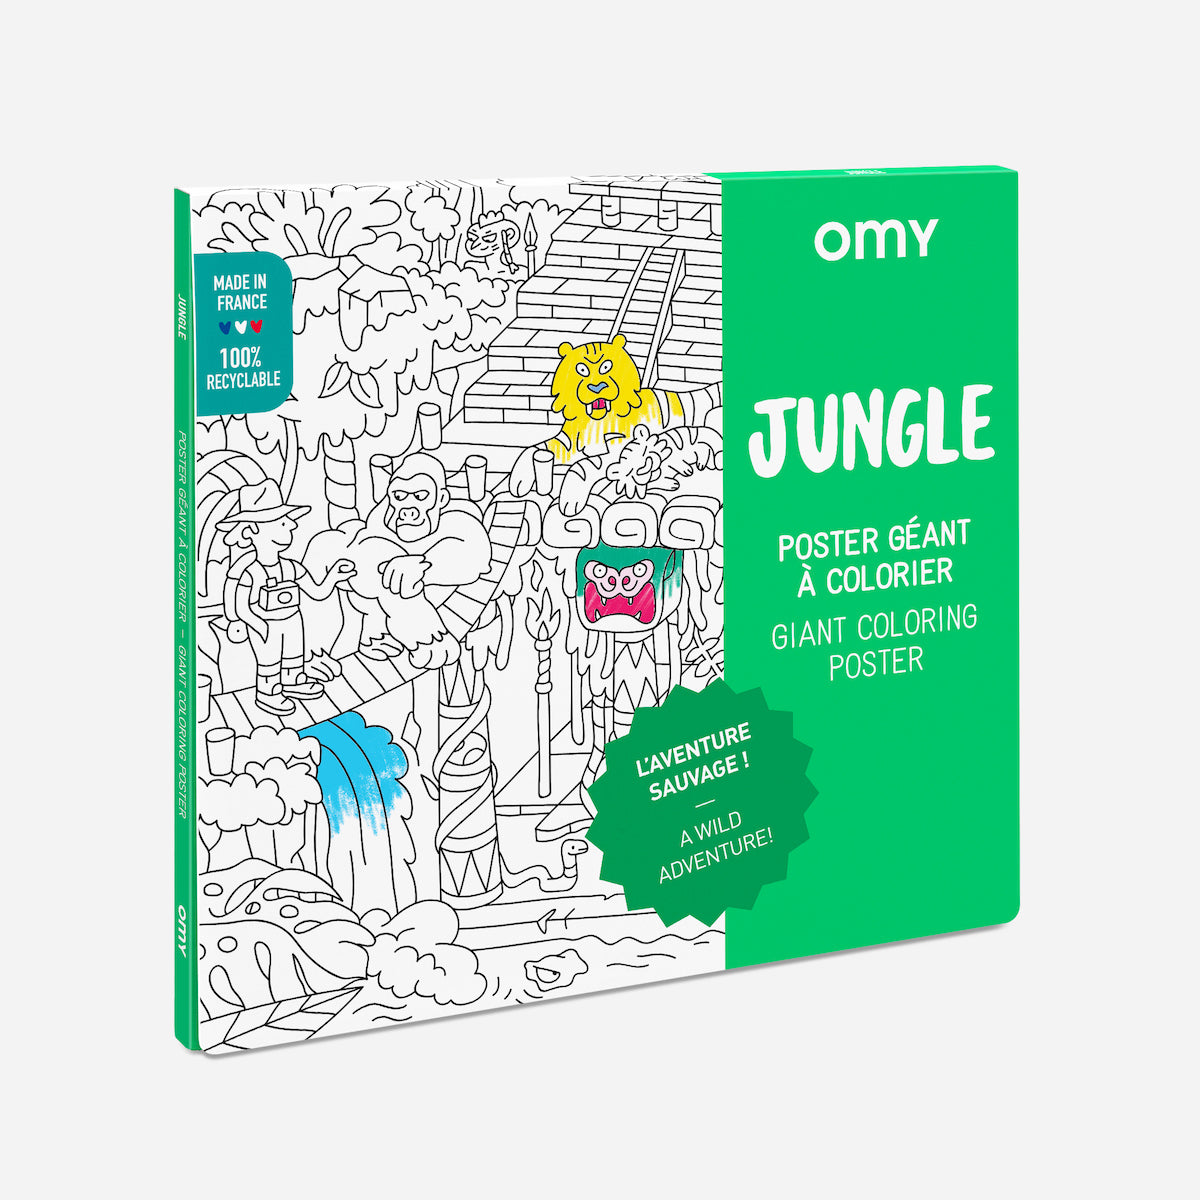 De OMY kleurposter 1 mtr Jungle zorgt voor heel veel uren kleurplezier. Deze grote themakleurplaat neemt je mee in de wondere wereld van de jungle. Pak je favoriete viltstiften erbij en ga op avontuur! VanZus.